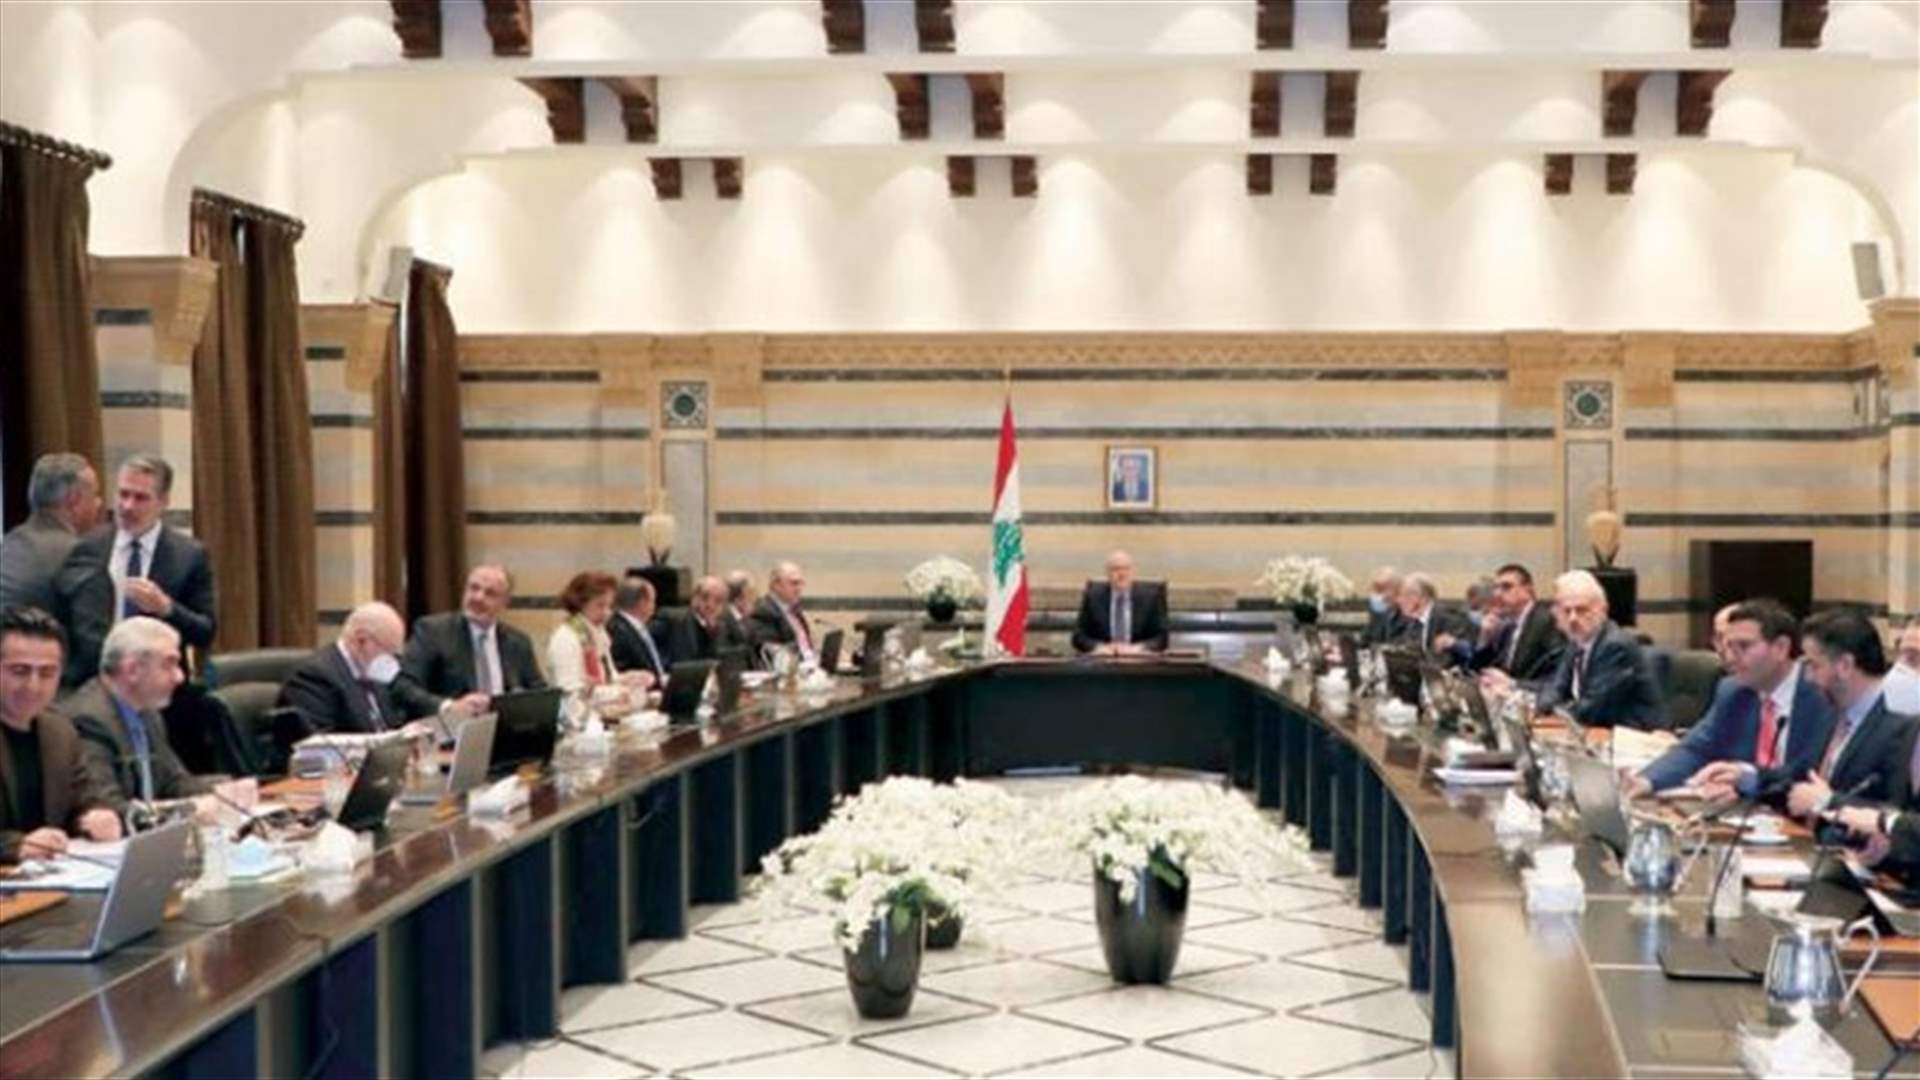 البنك الدولي يتهم النخبة الحاكمة في لبنان بالإنكار وتدبير كساد الإقتصاد (الشرق الأوسط)